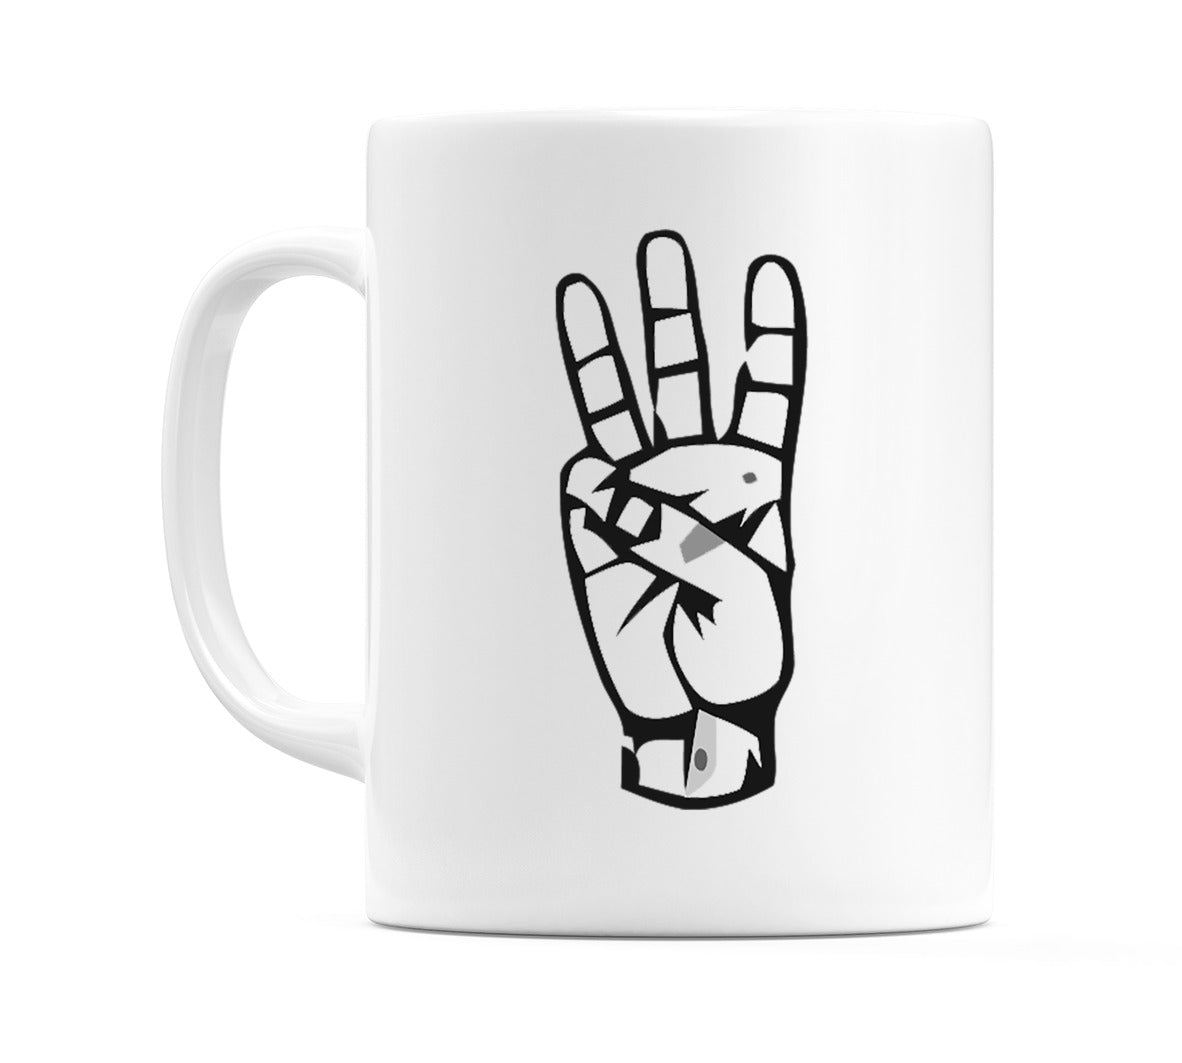 US Sign Language Number 6 Mug